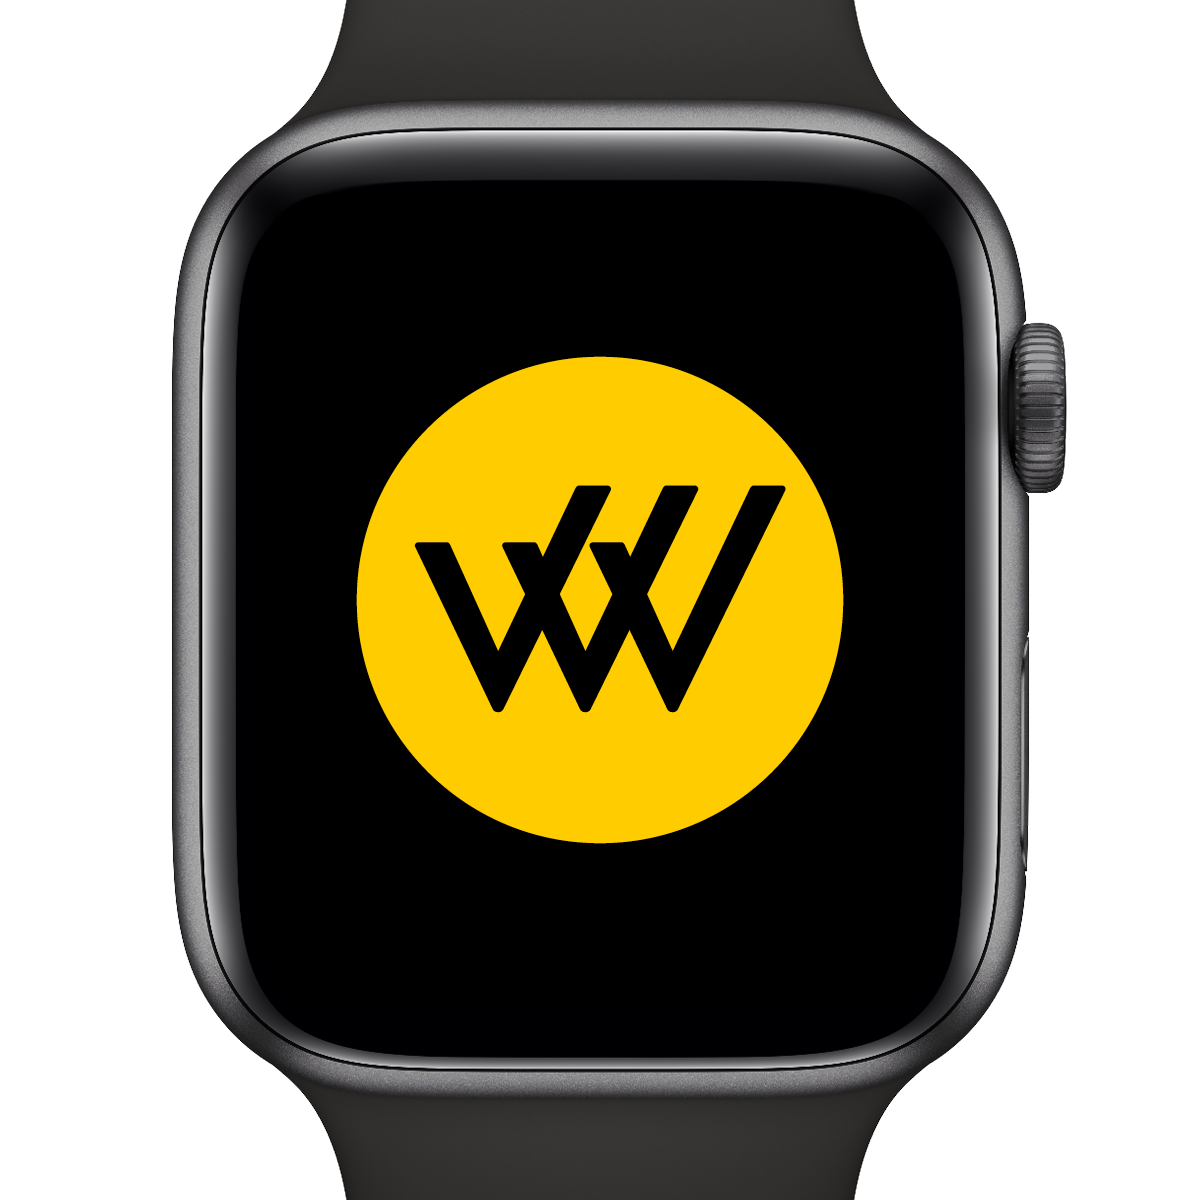 Apple Watch displaying Row House logo